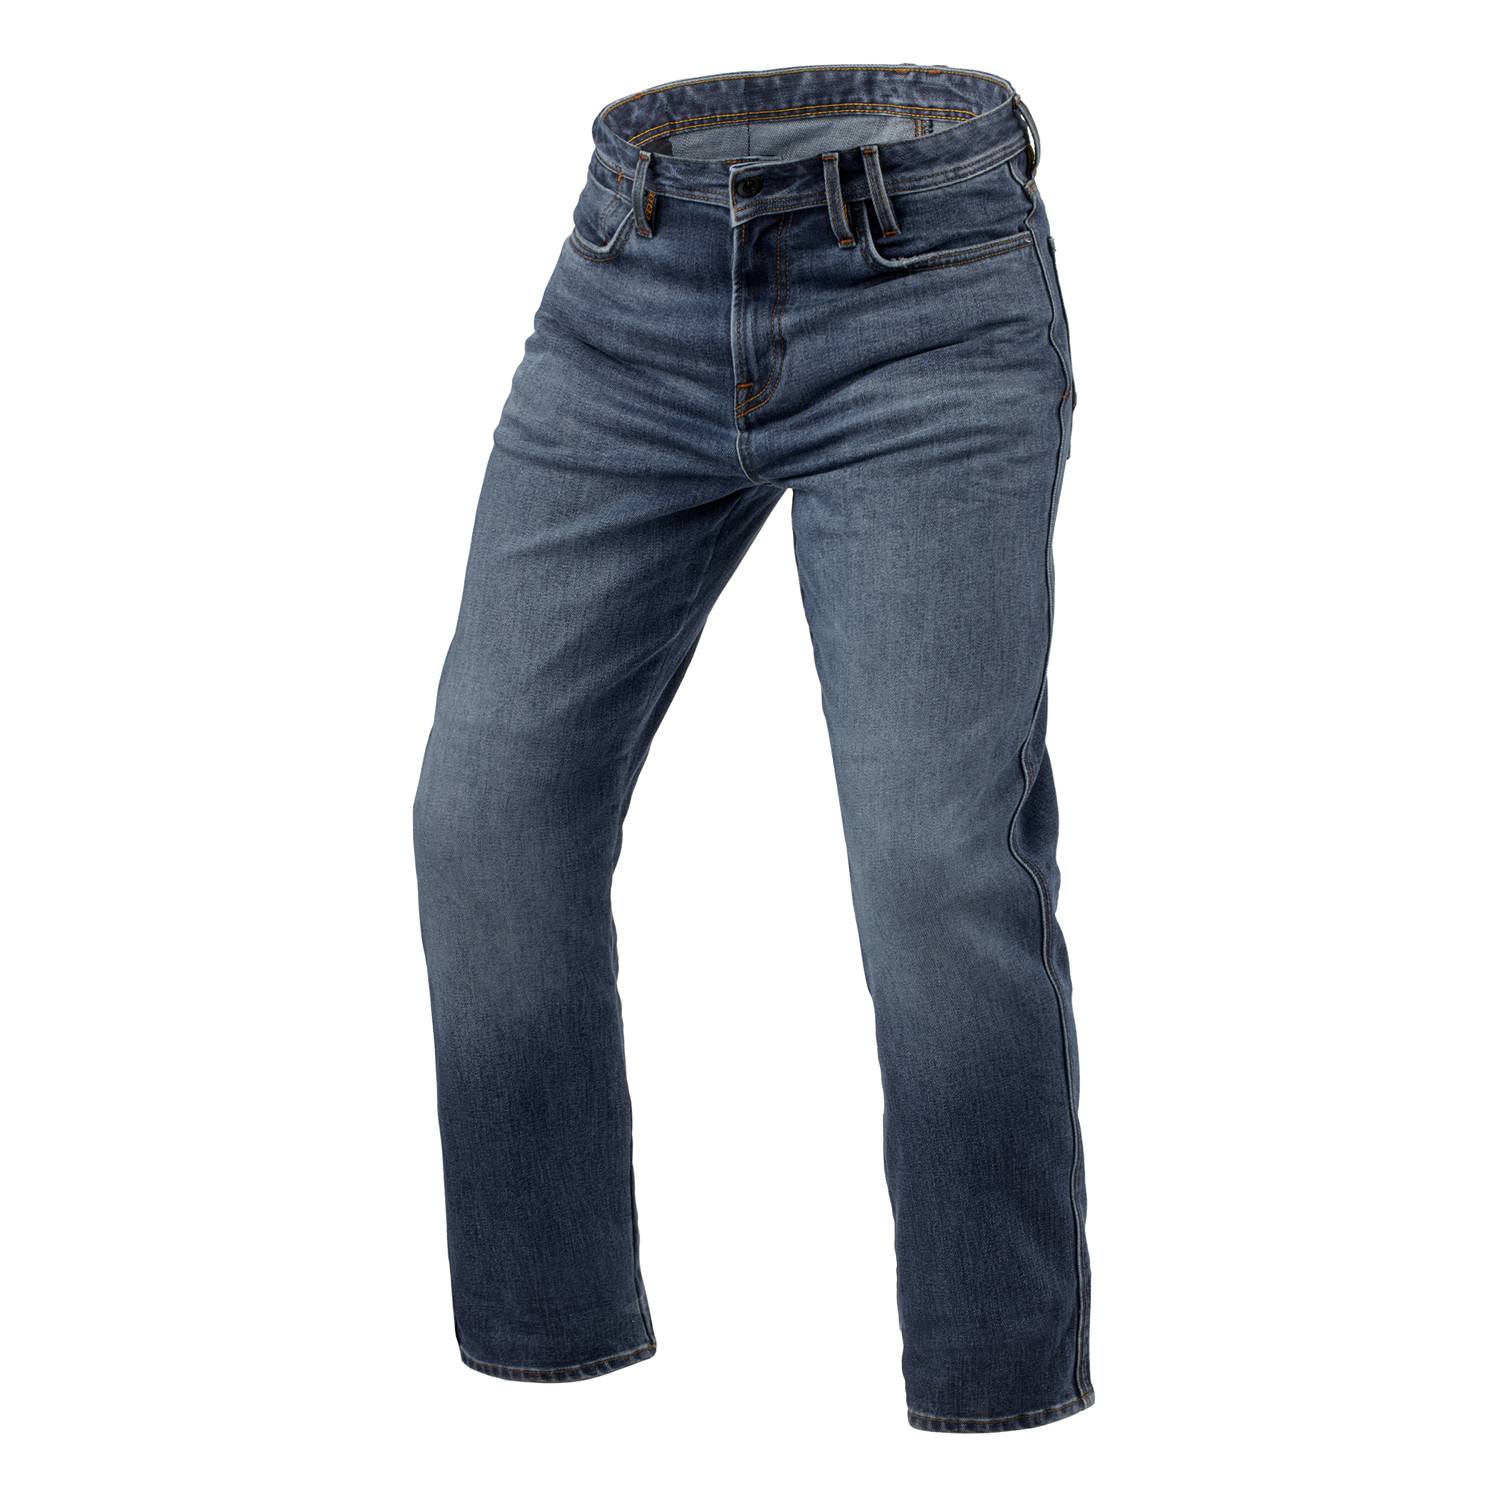 Image of REV'IT! Jeans Lombard 3 RF Medium Blue Stone L34 Motorcycle Jeans Size L34/W28 EN